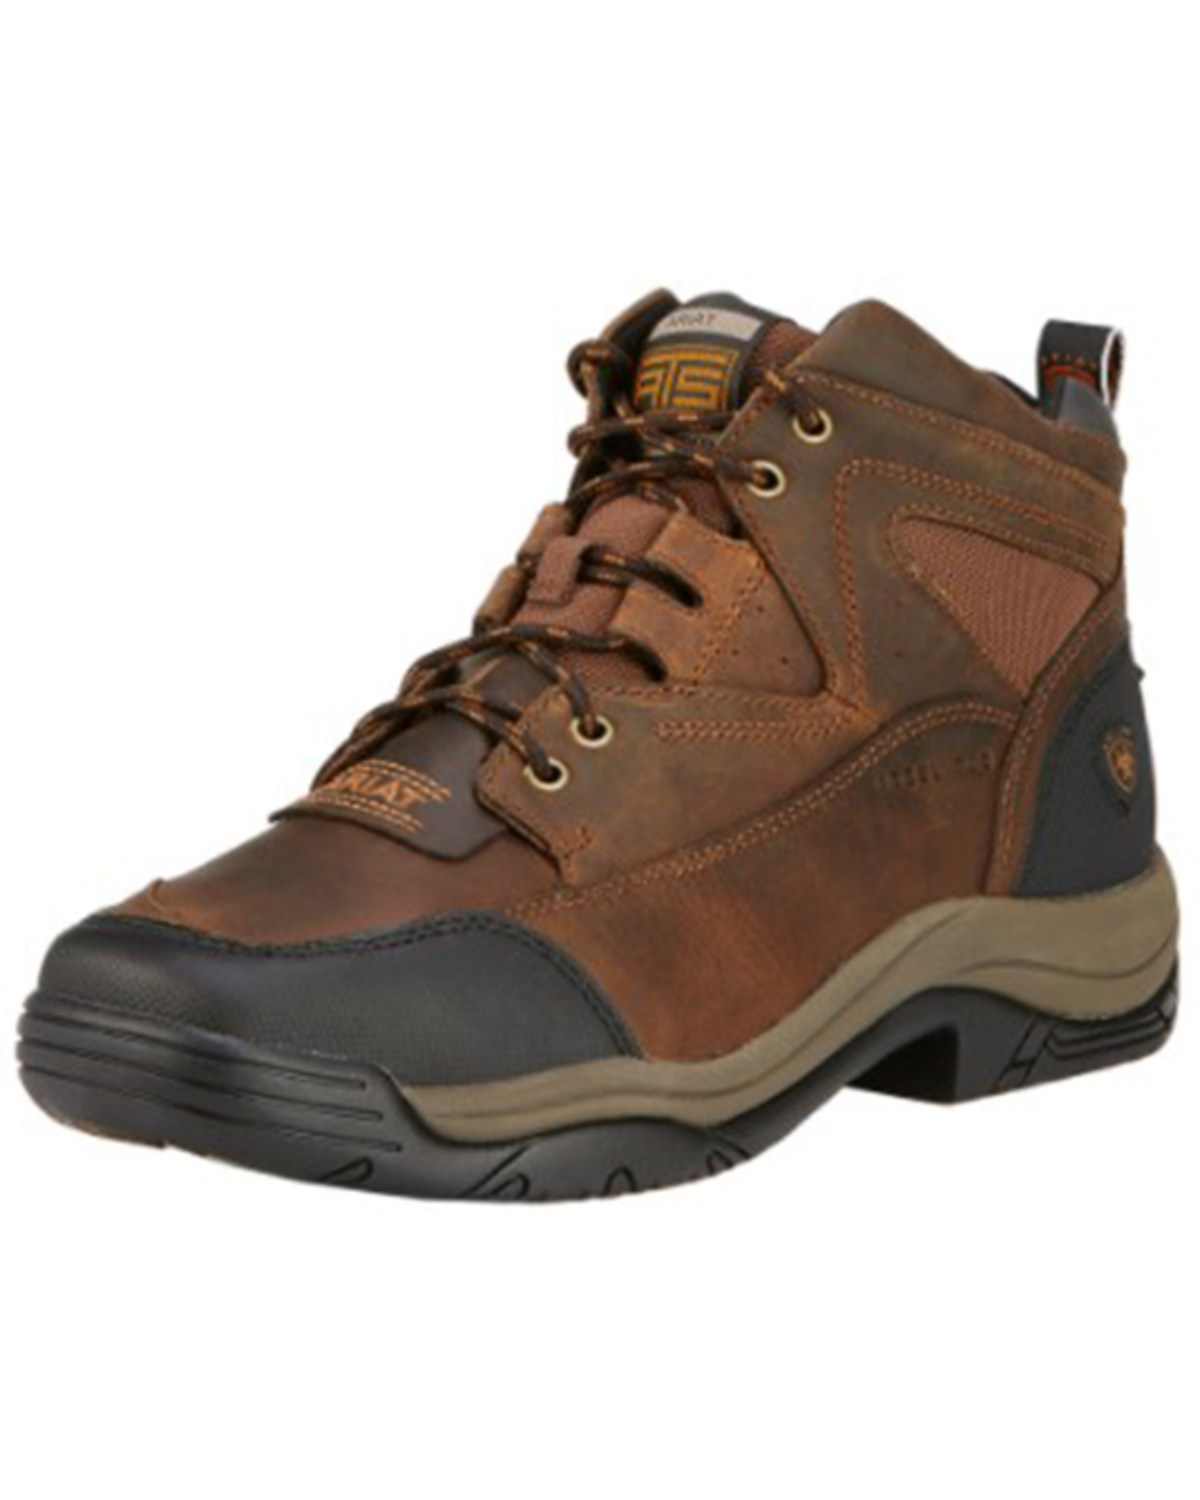 Ariat Men's Terrain Hiker Work Boots - Steel Toe